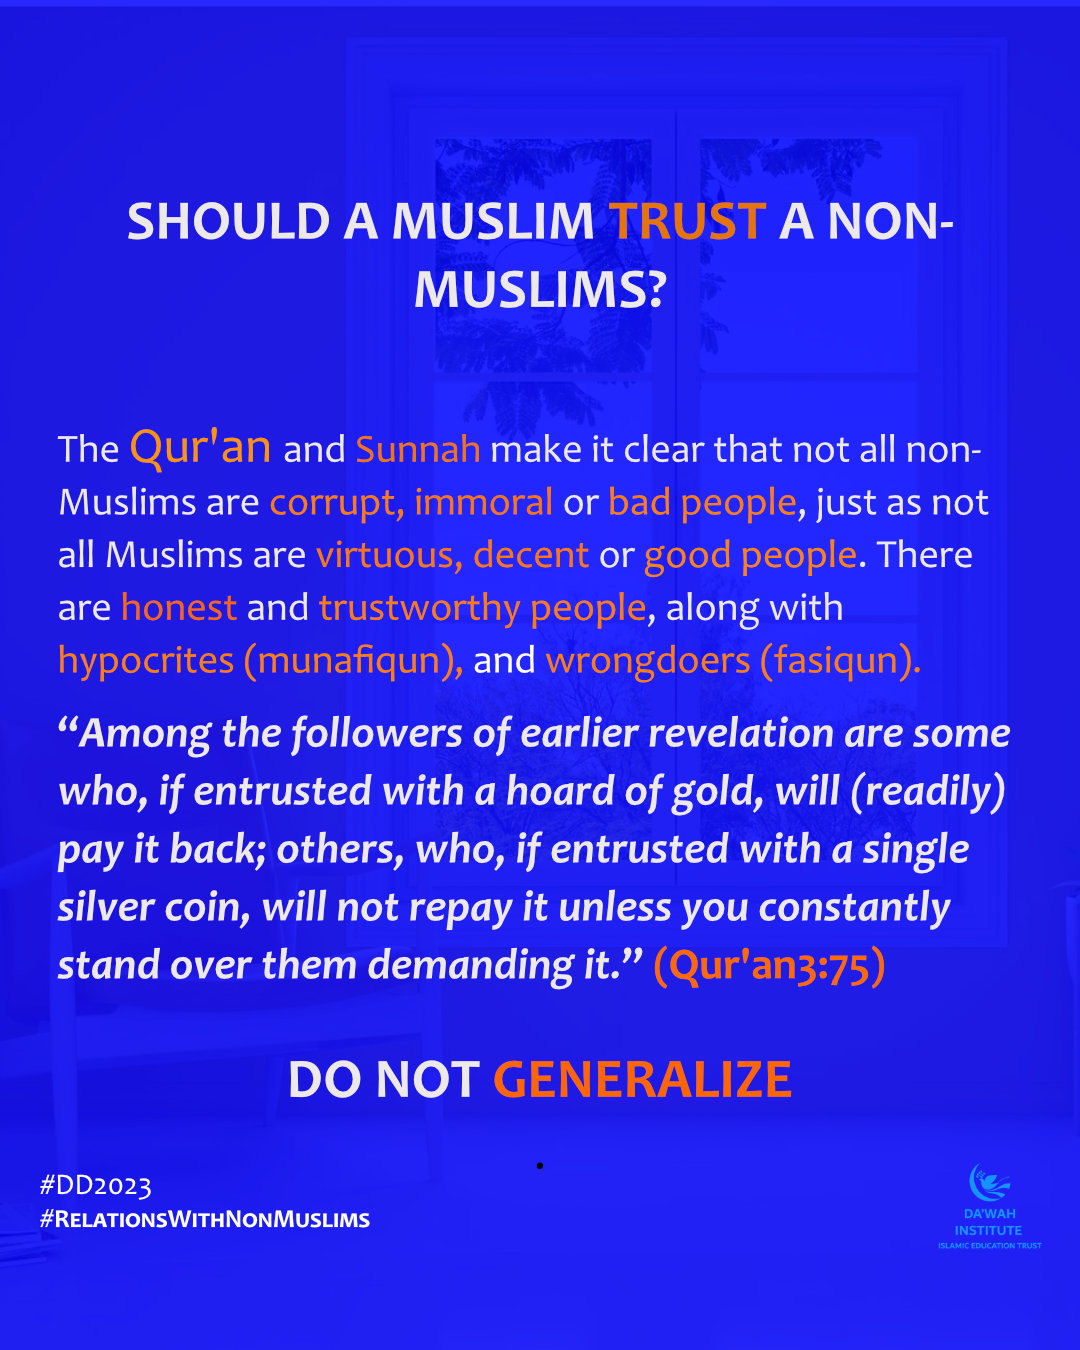 SHOULD A MUSLIM TRUST A NON-MUSLIMS?